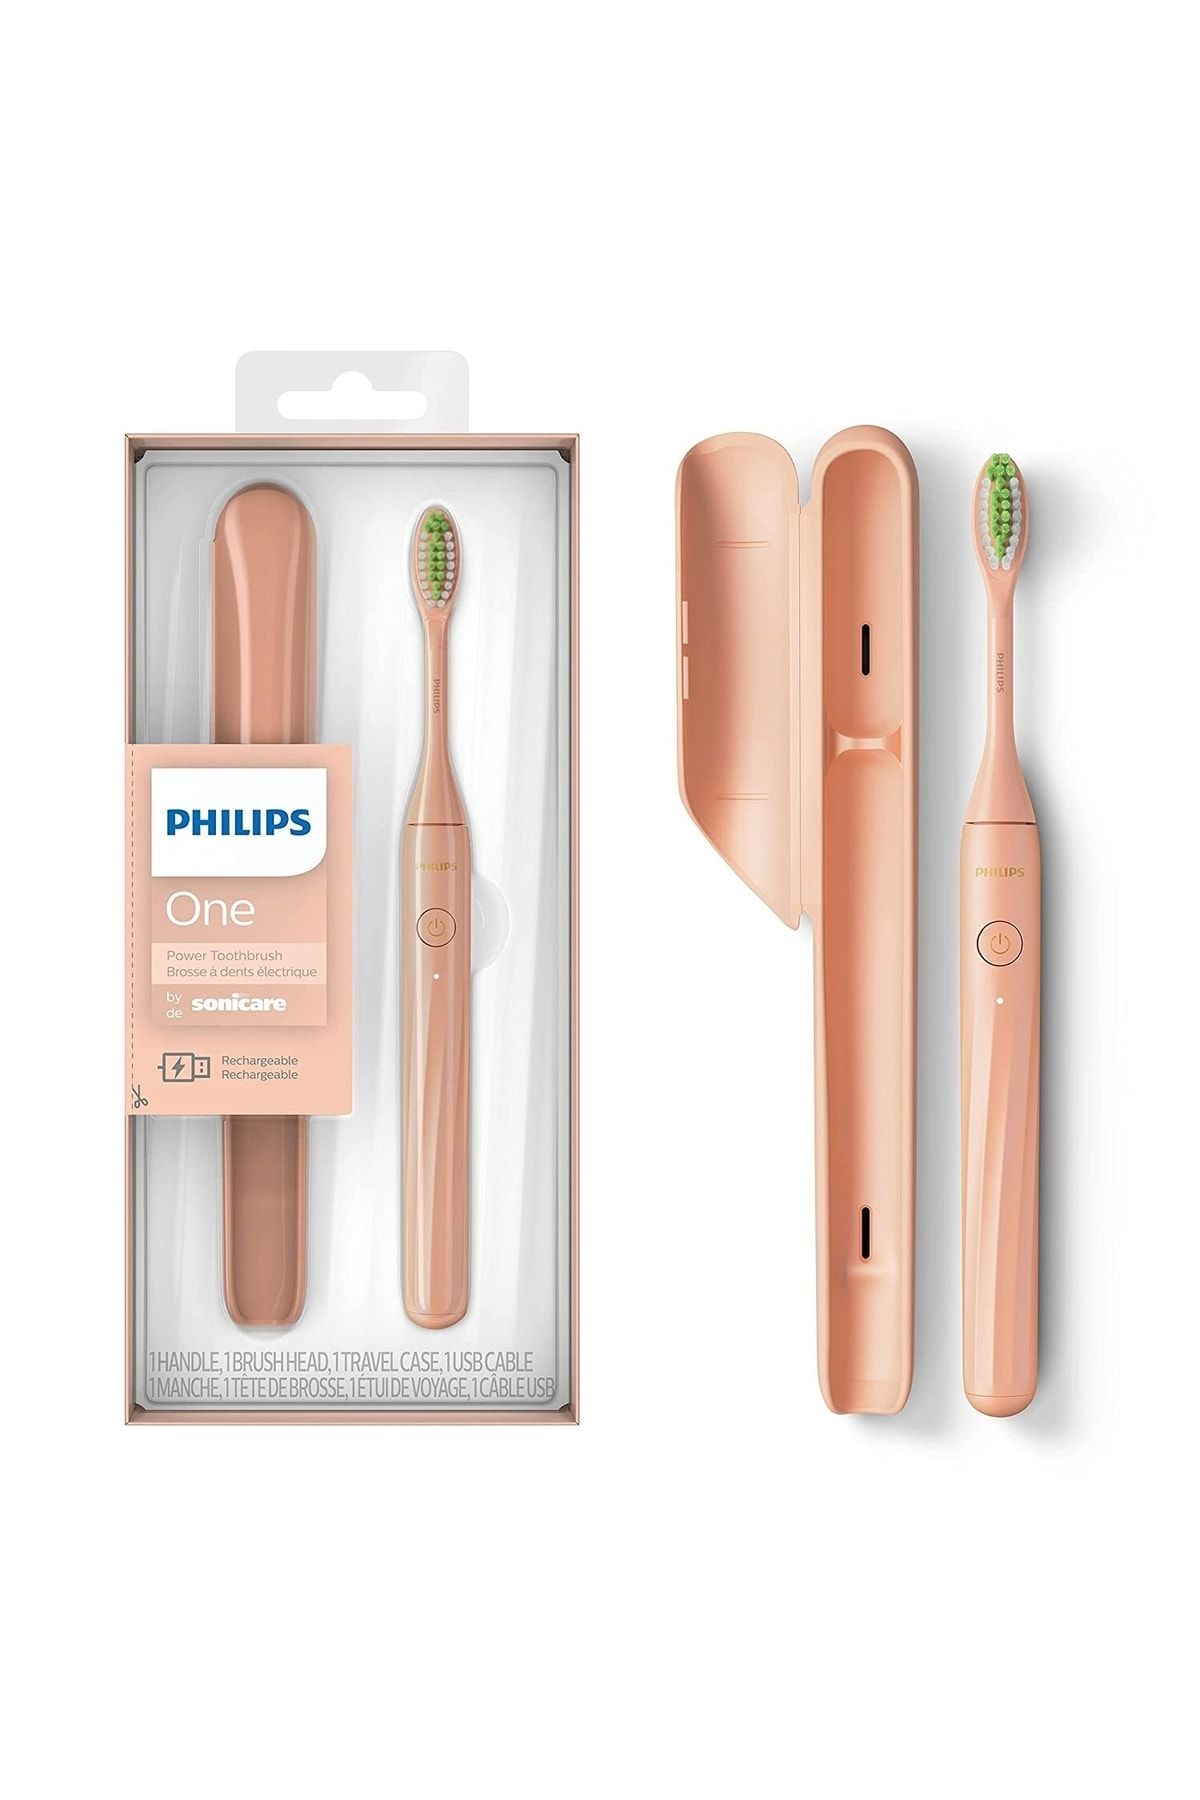 Philips One By Sonicare Şarj Edilebilir Diş Fırçası, Pırıltılı